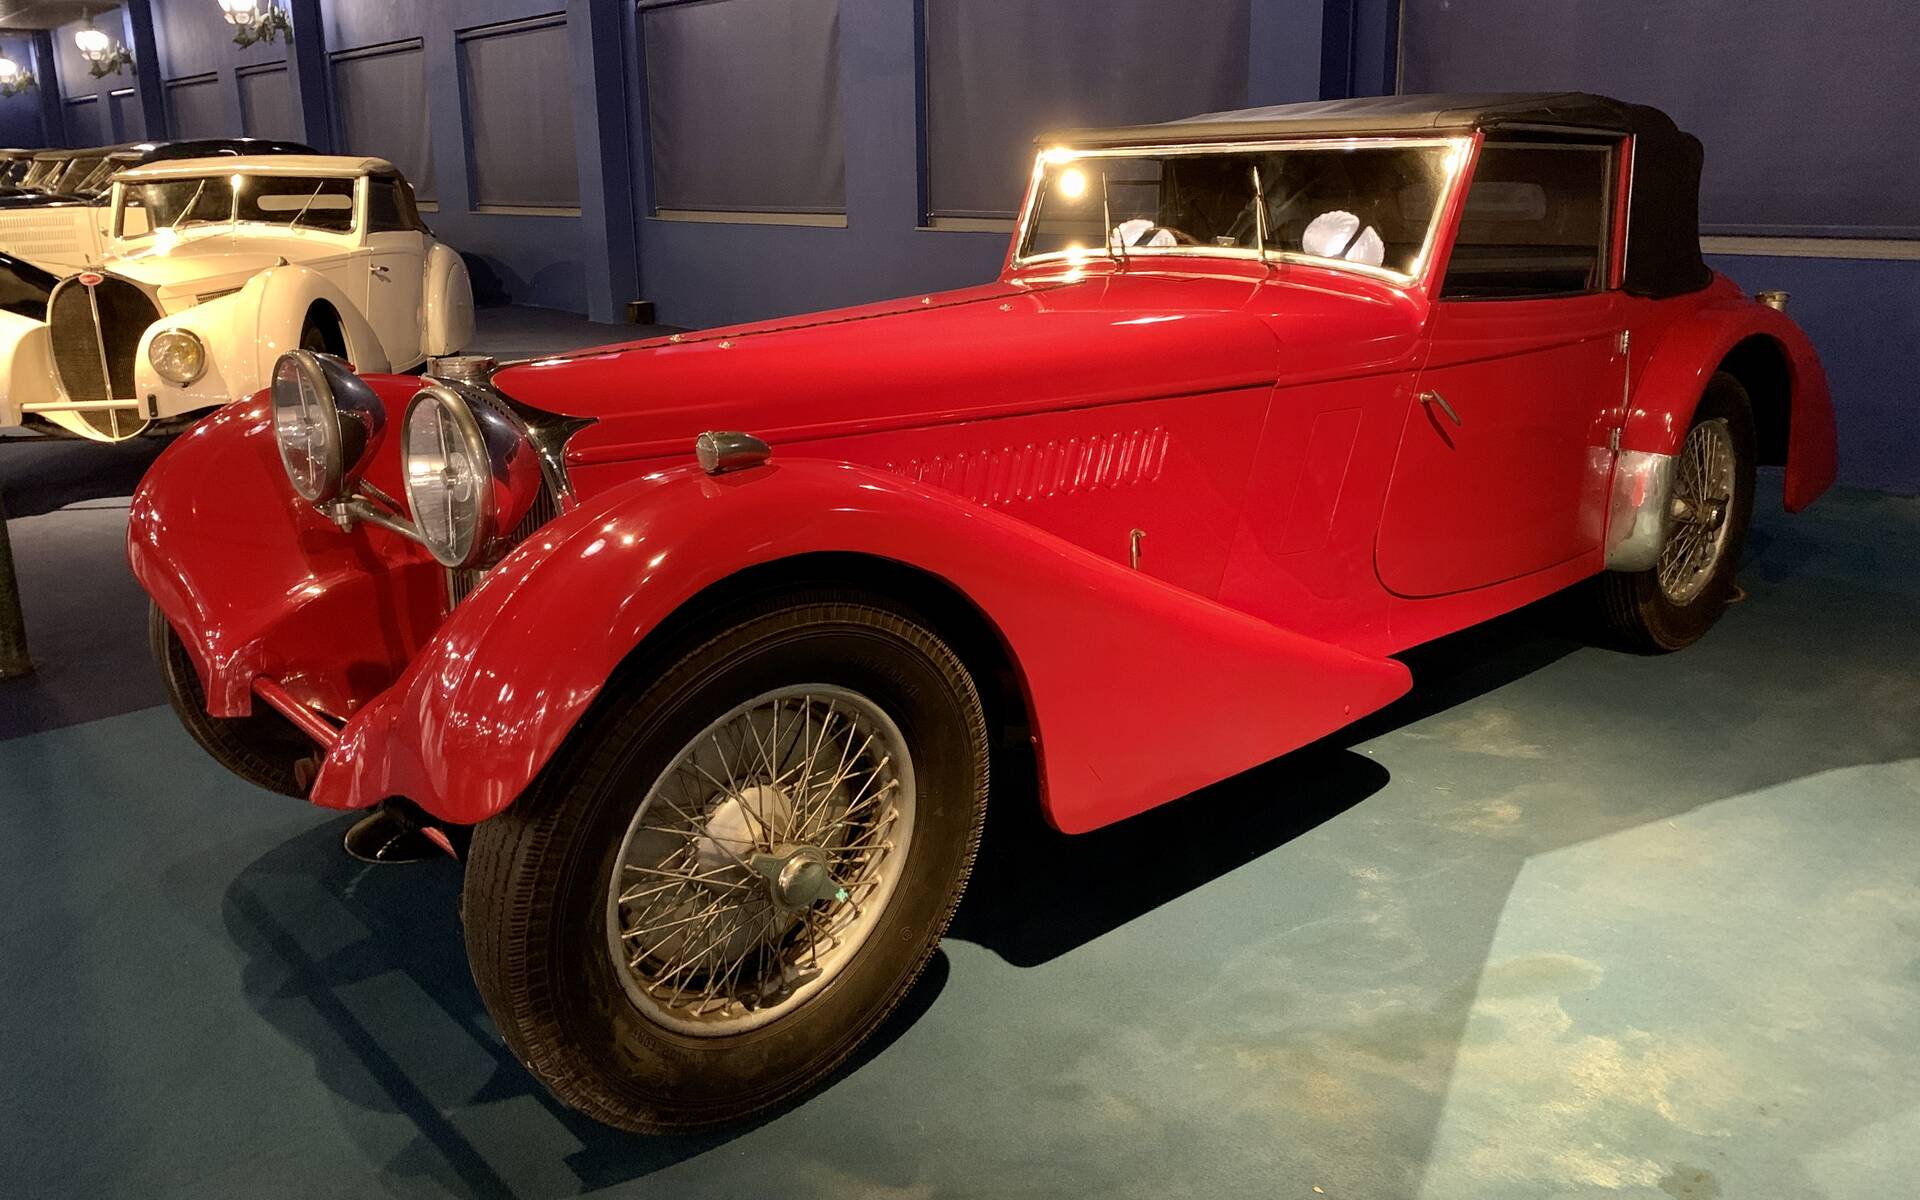 En photos : une centaine de Bugatti réunies dans un même musée 503104-en-photos-des-dizaines-de-bugatti-reunies-dans-un-meme-musee